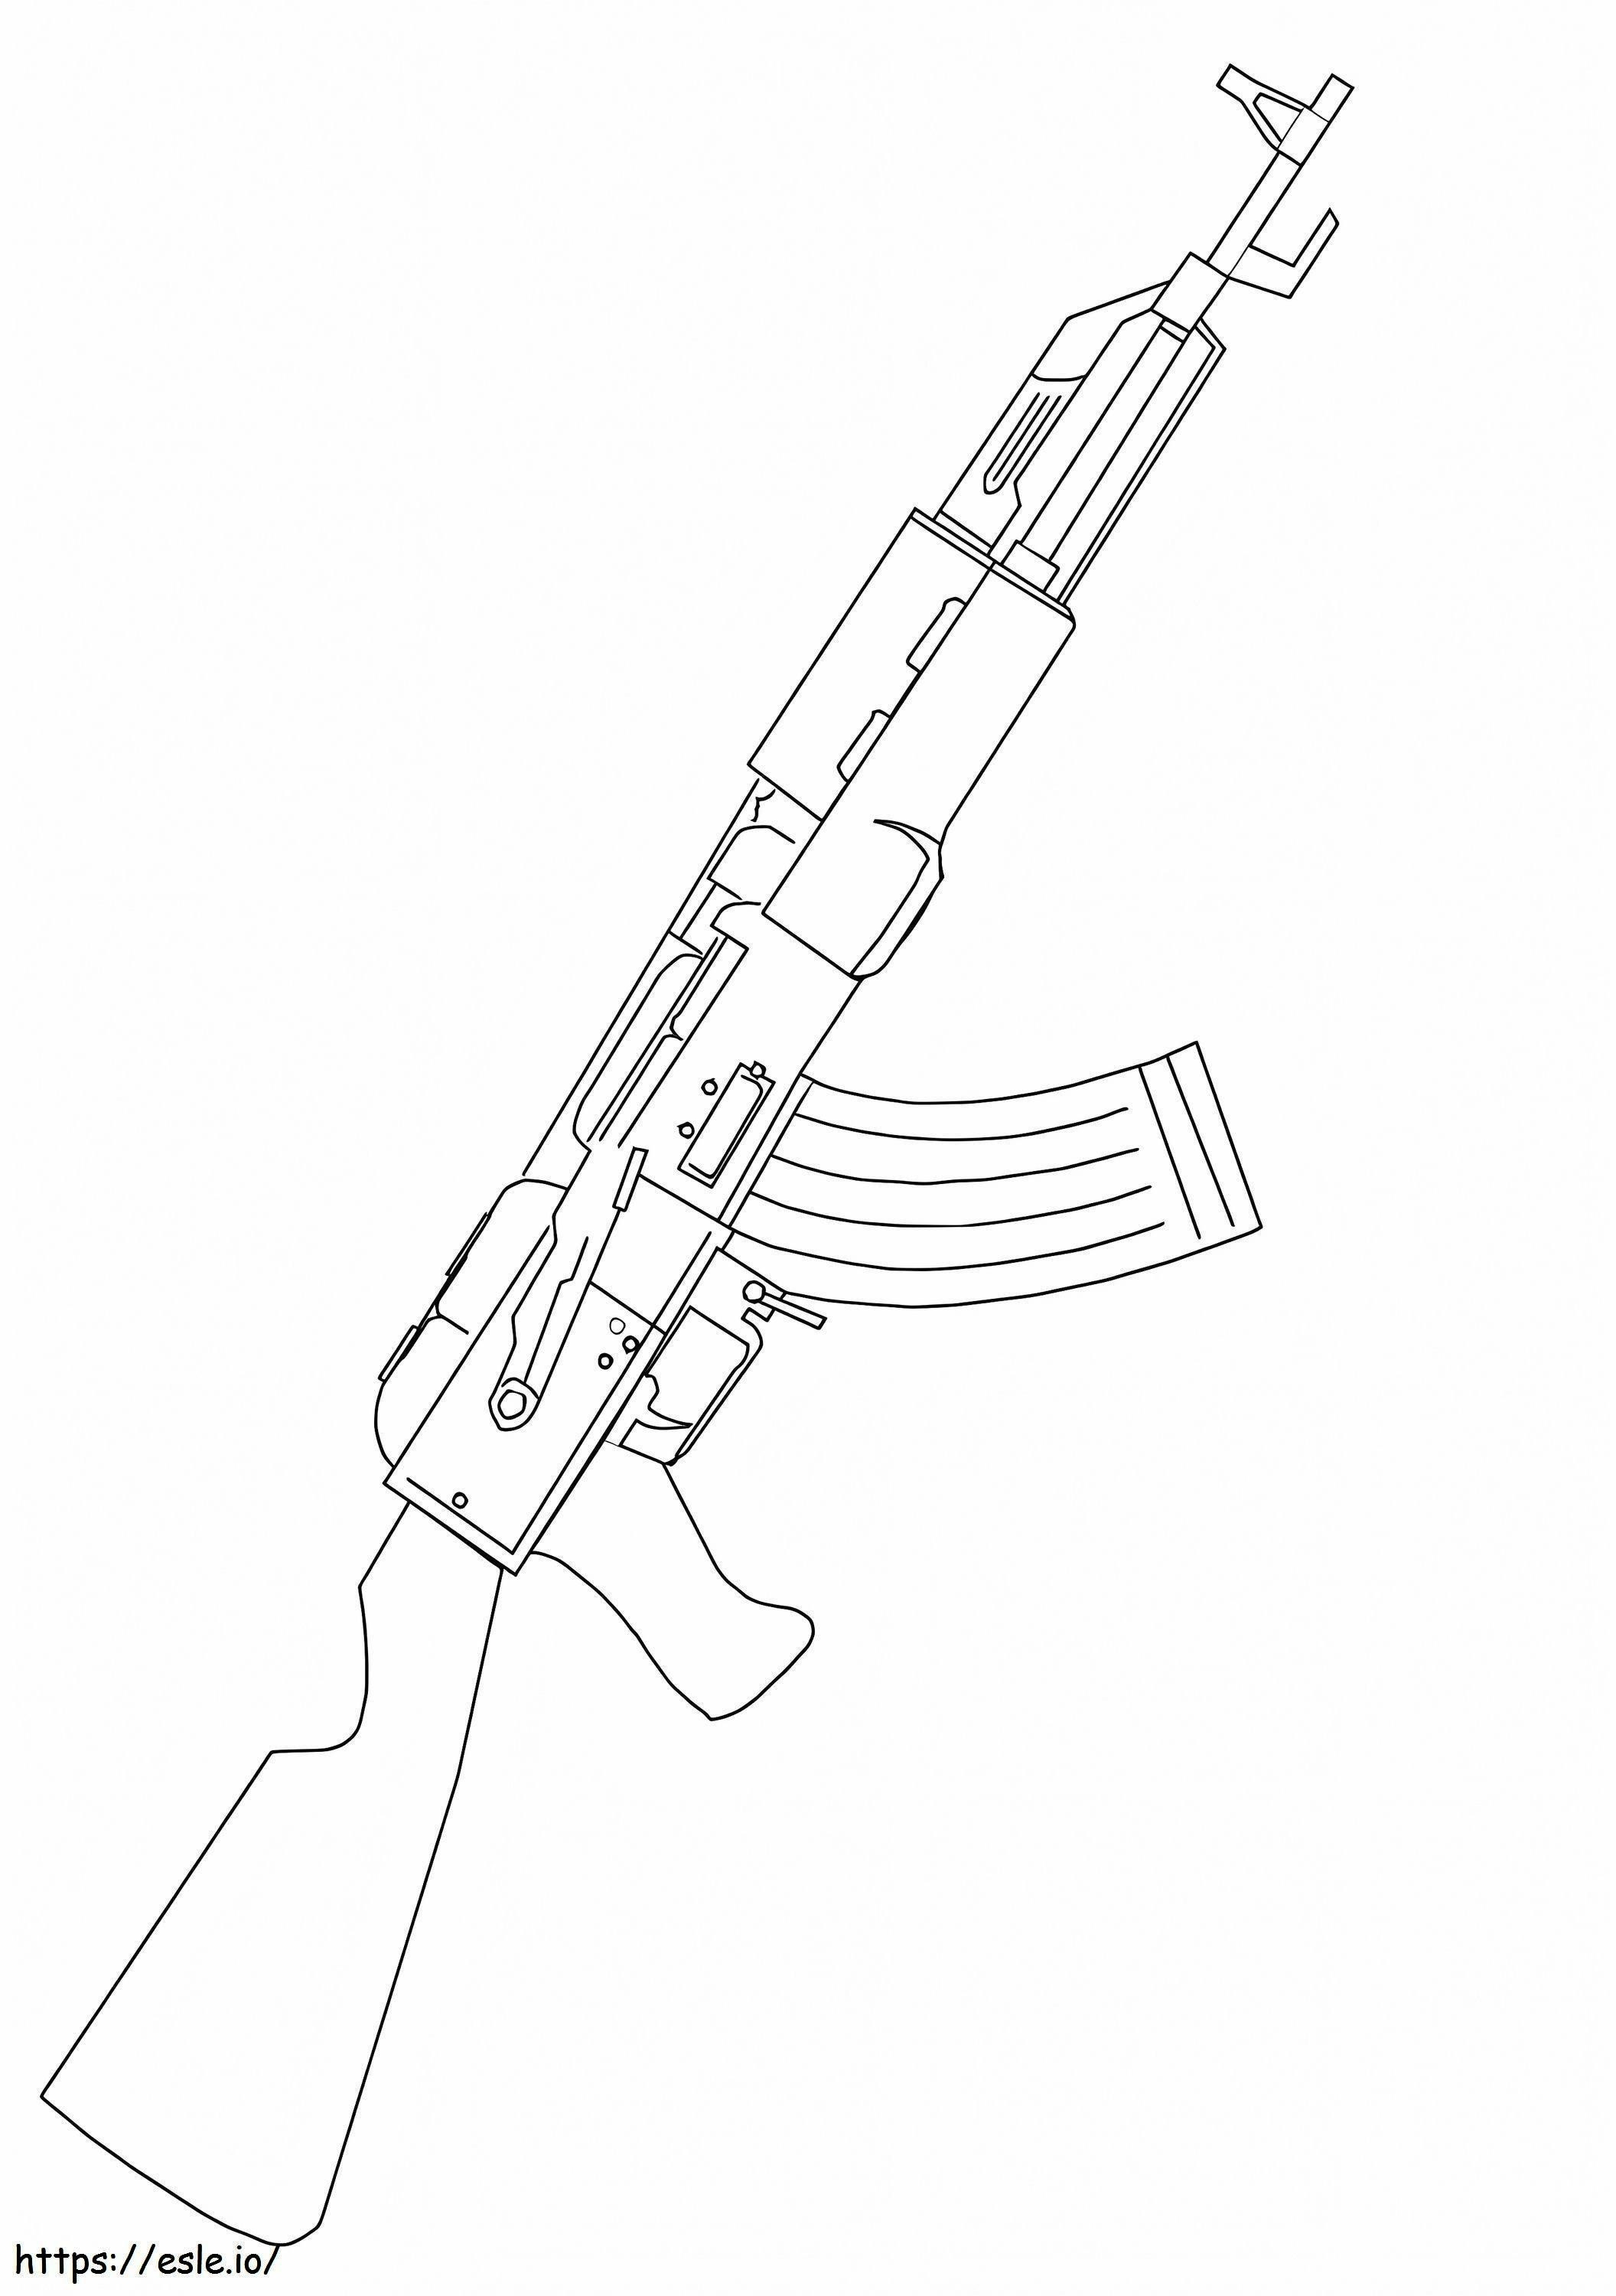 AK 47 aanvalsgeweer kleurplaat kleurplaat